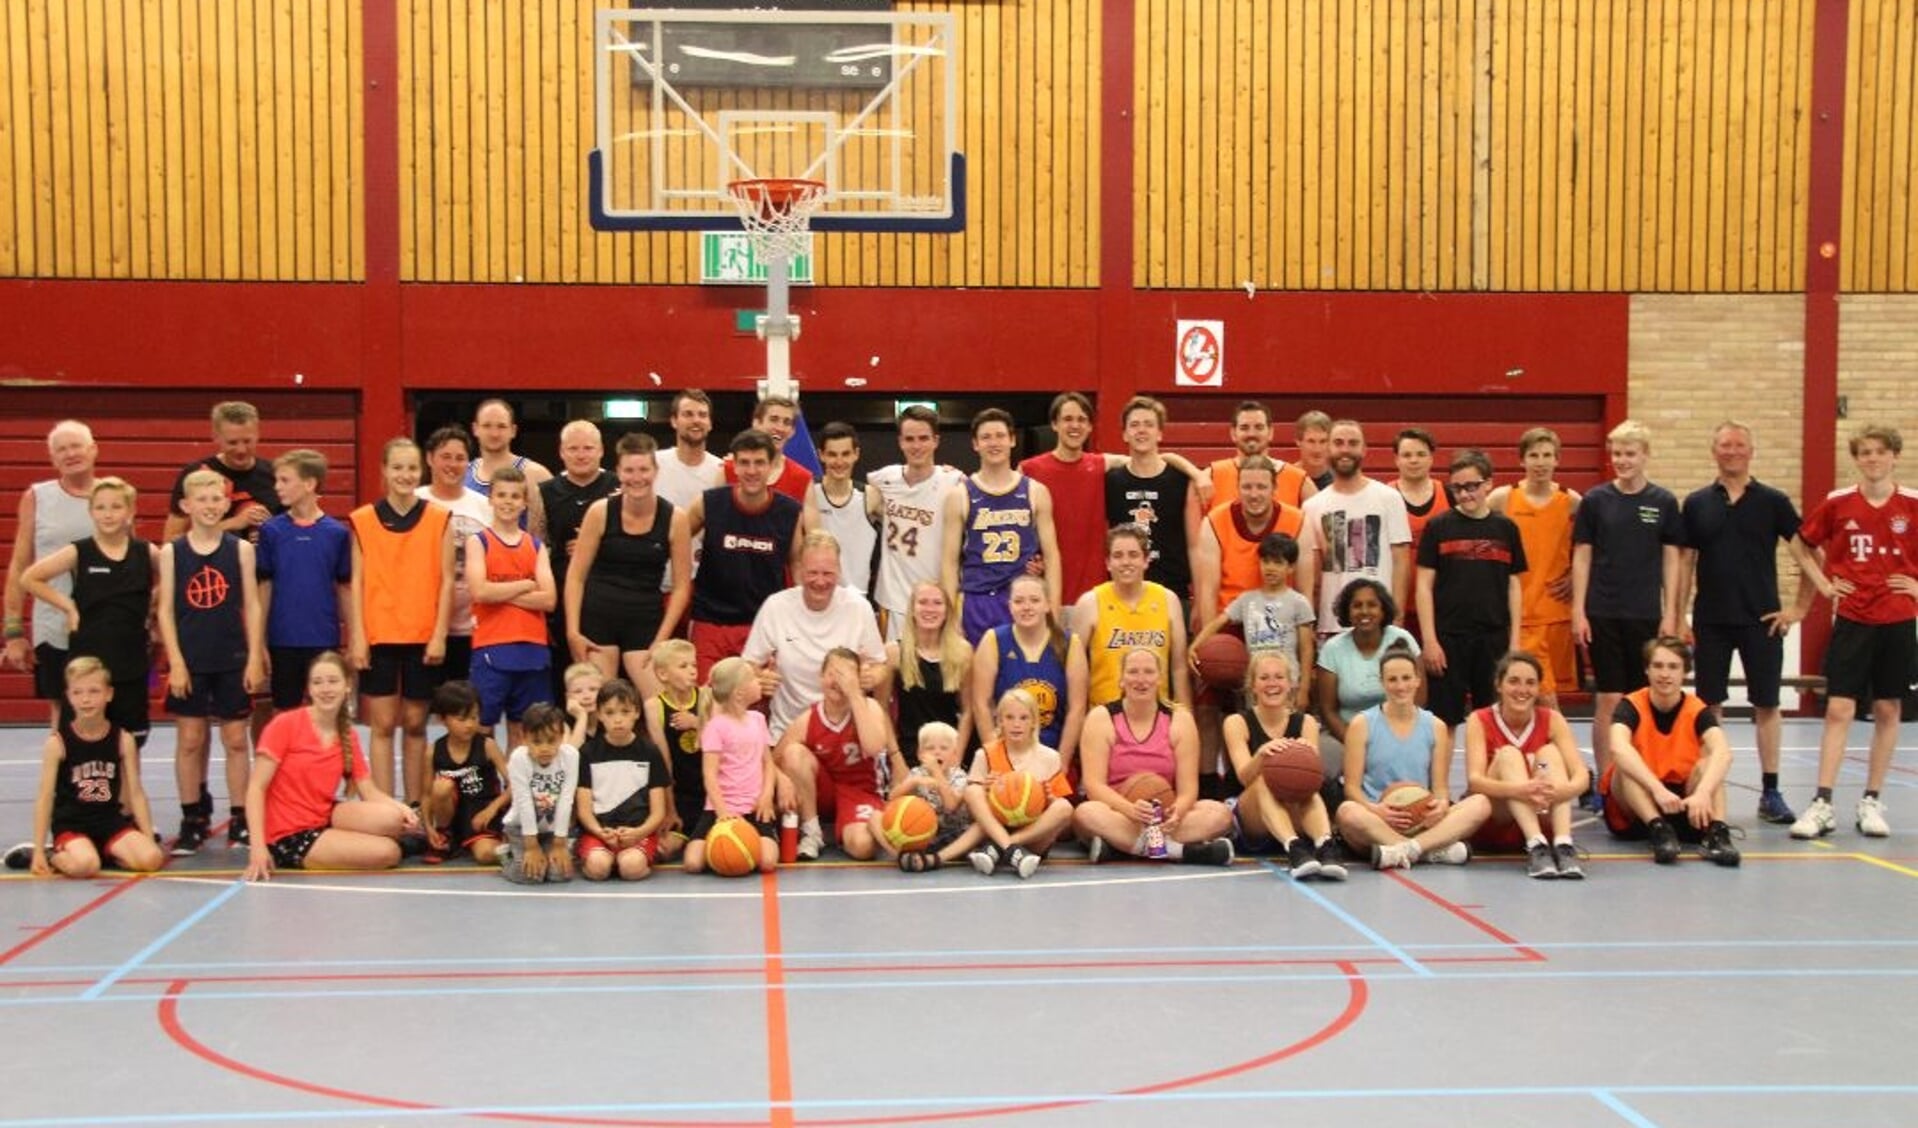 Deelnemers FritsKleinhuis tpernooi. Links met lichte haren Frits Kleinhuis. | Foto: pr The Jump.